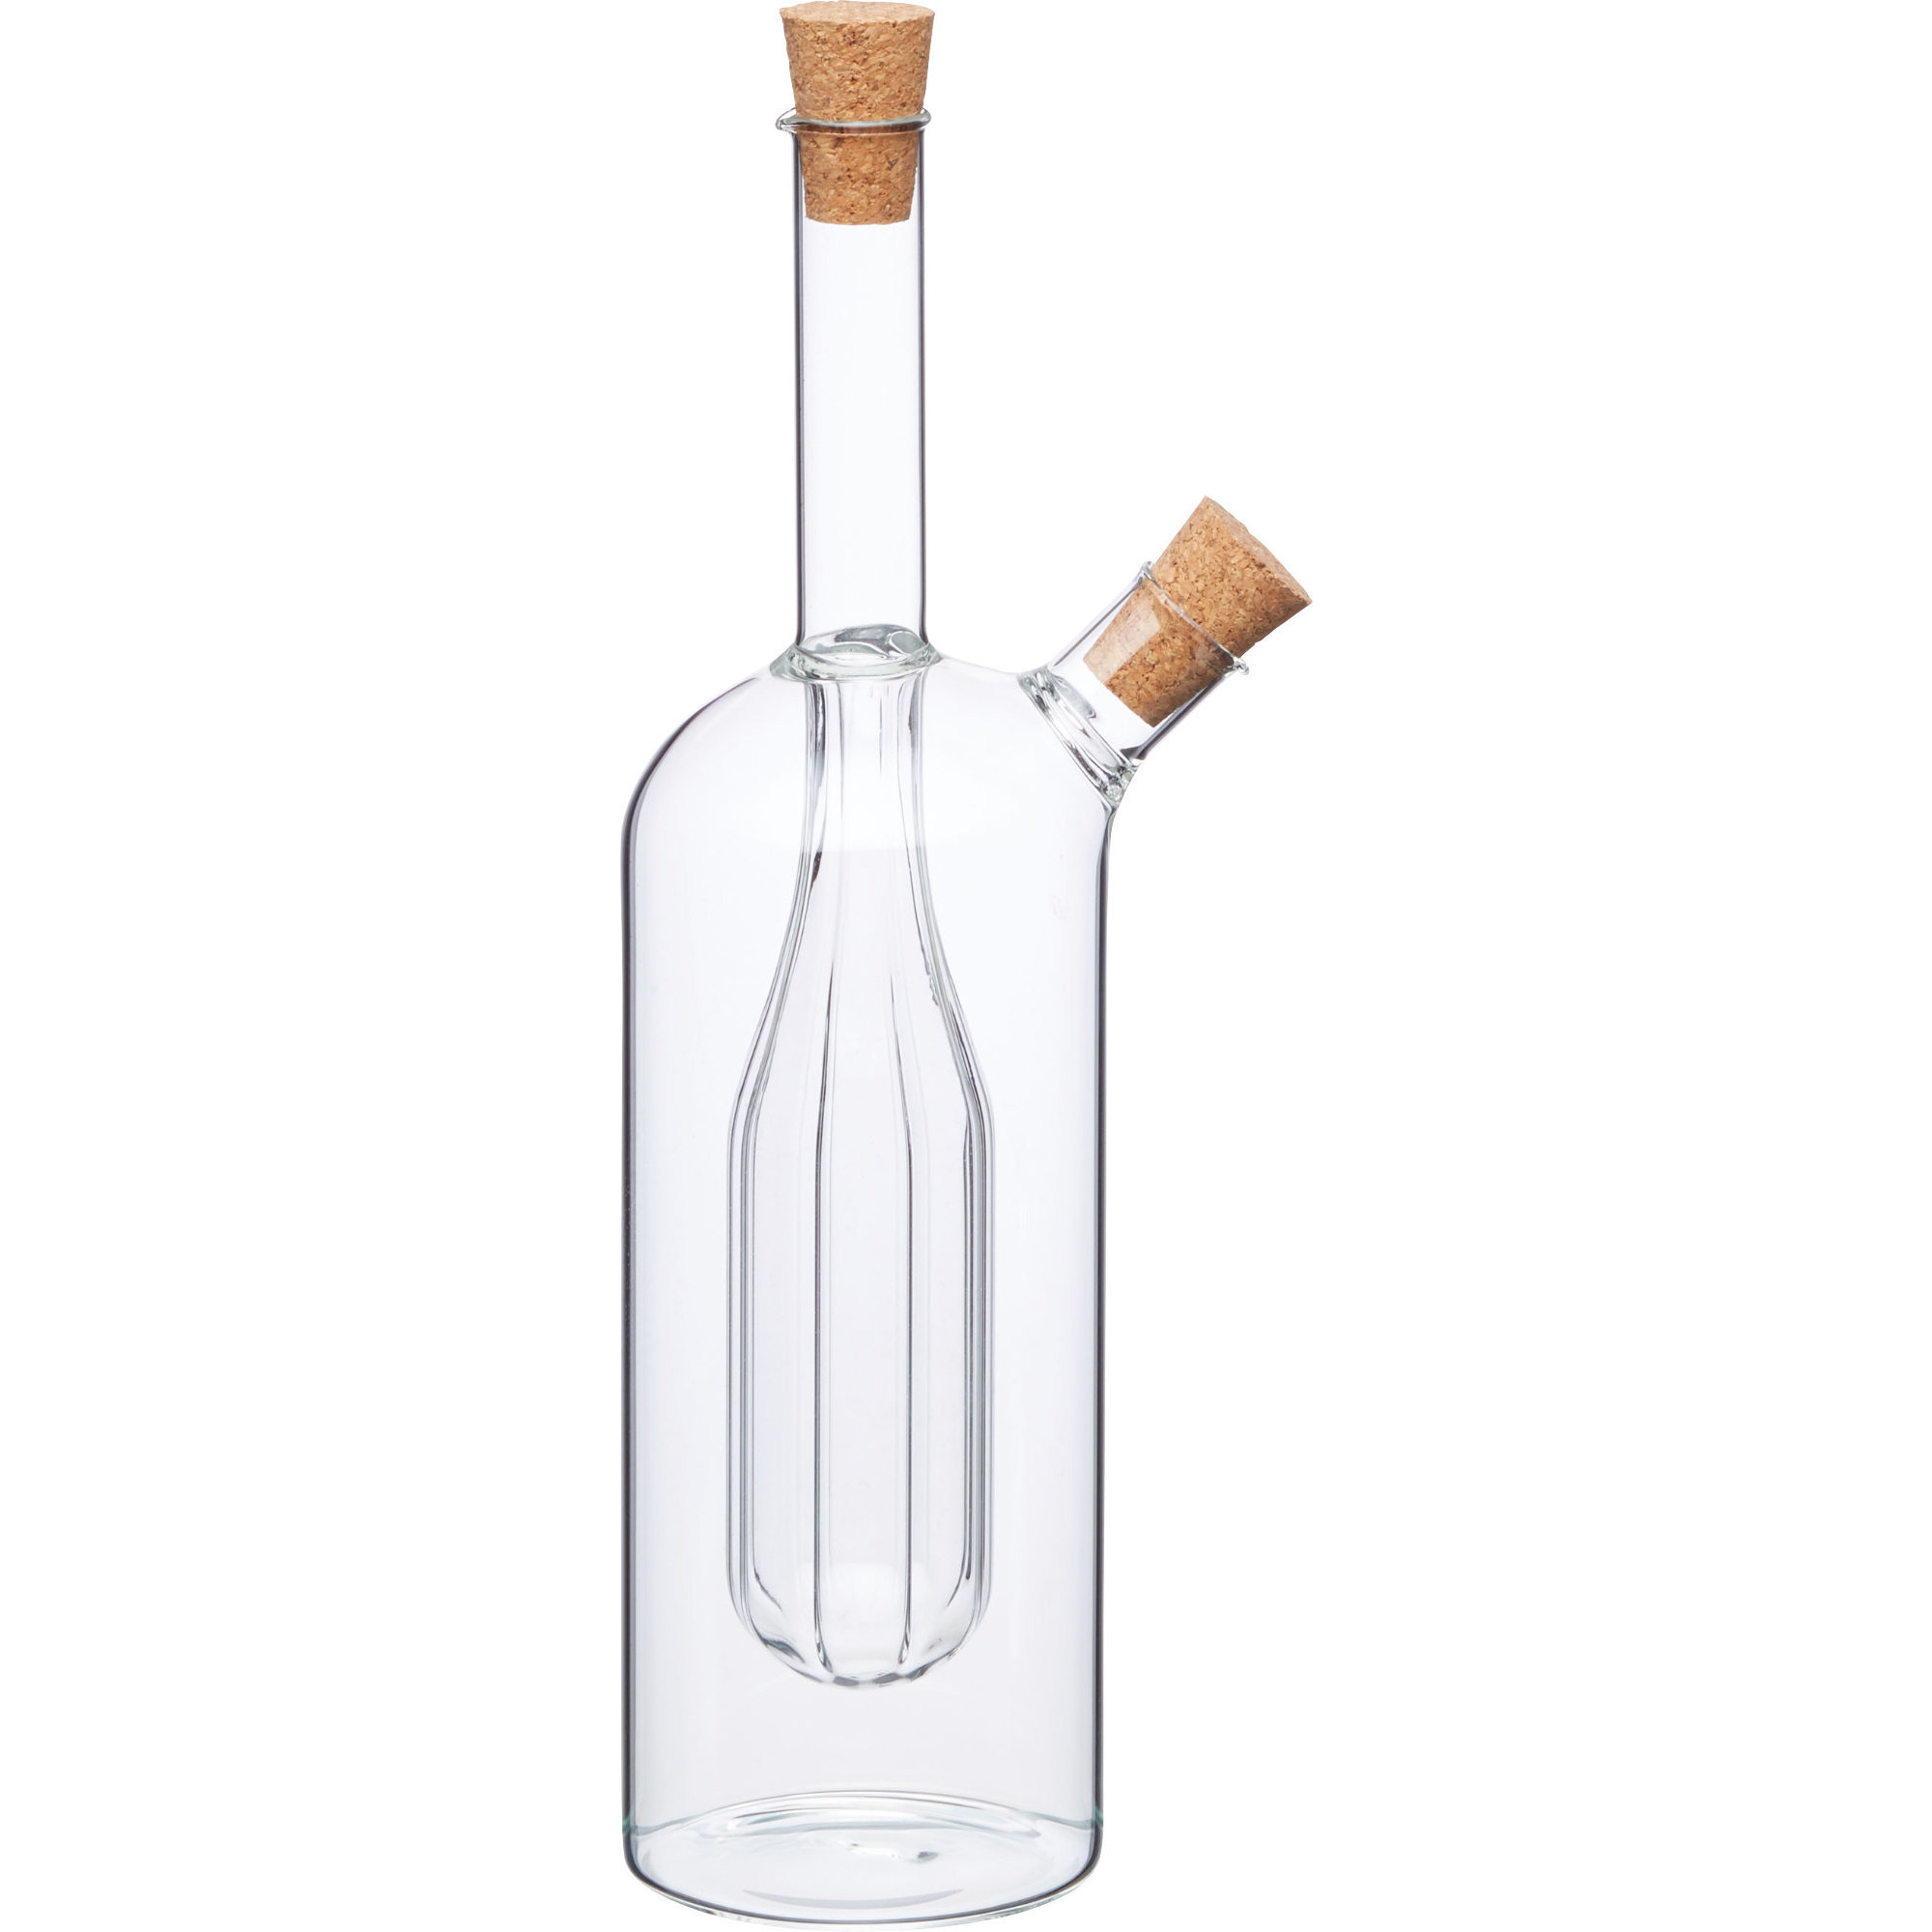 550 ml Volumen KitchenCraft World of Flavours Olivenöl//Essigflasche mit traditionell geriffelter Oberfläche Glas Olivenölspender